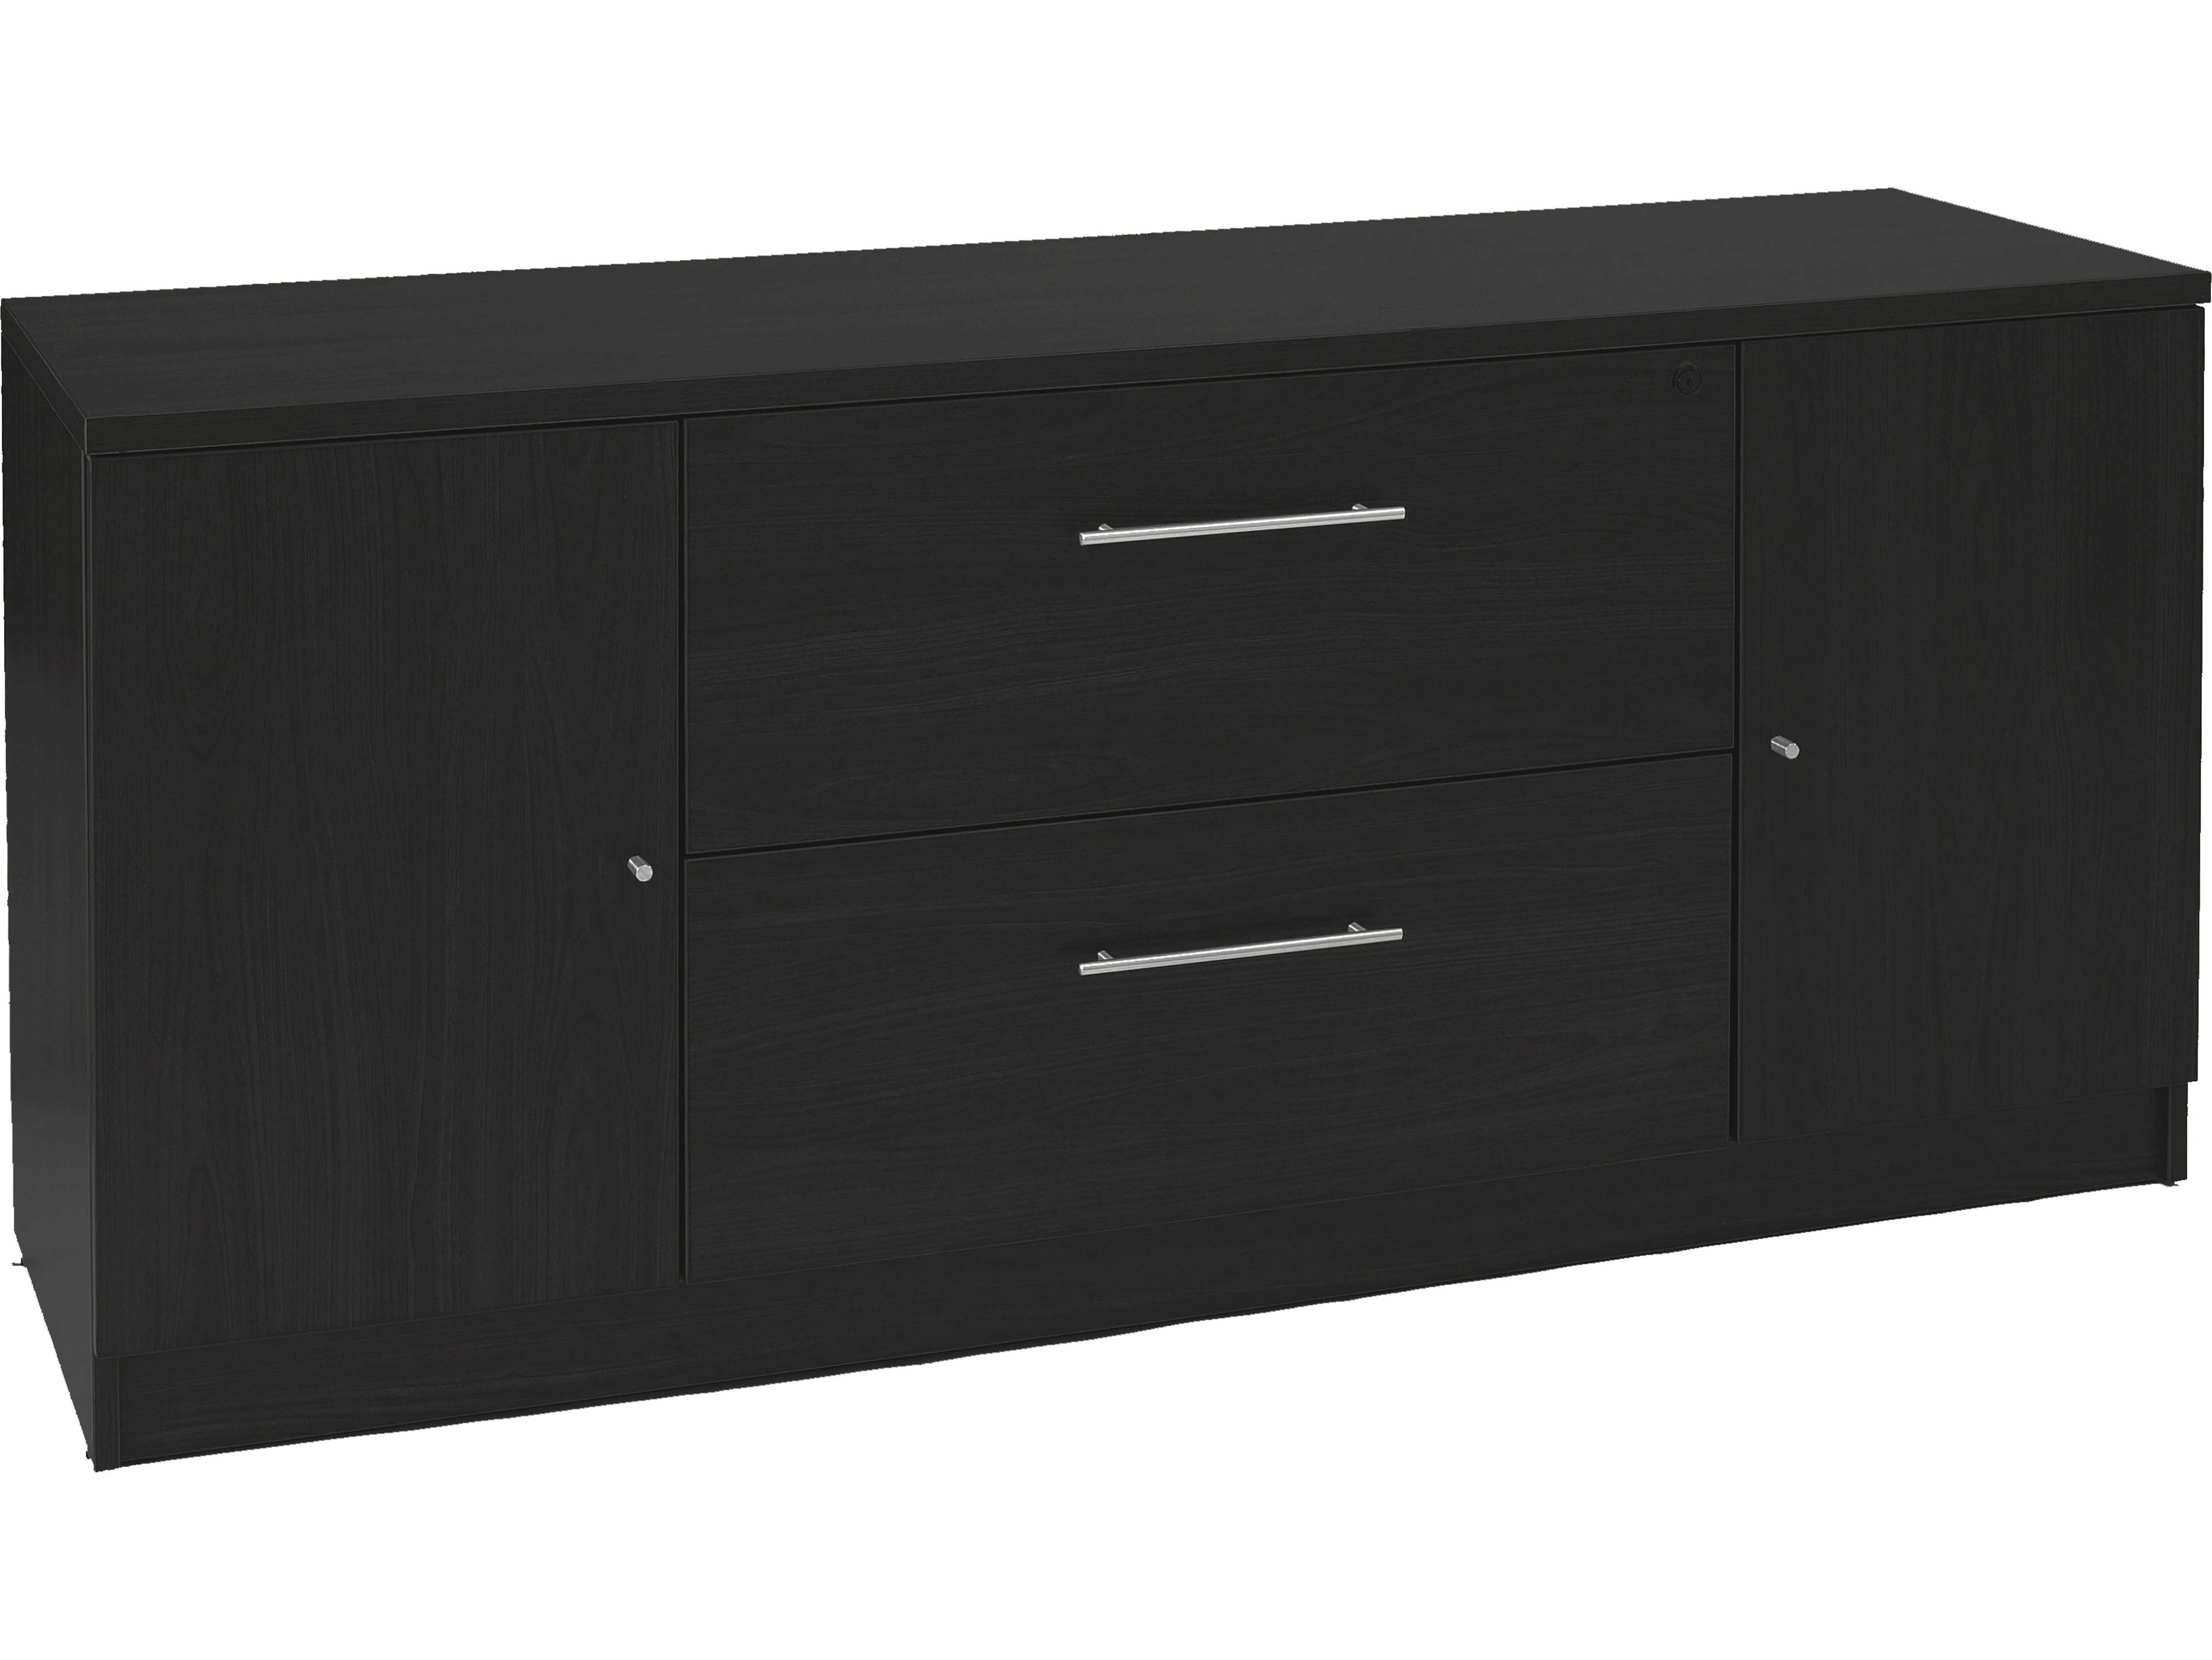 Unique Furniture 100 Series Espresso Credenza File Cabinet in size 5786 X 4341